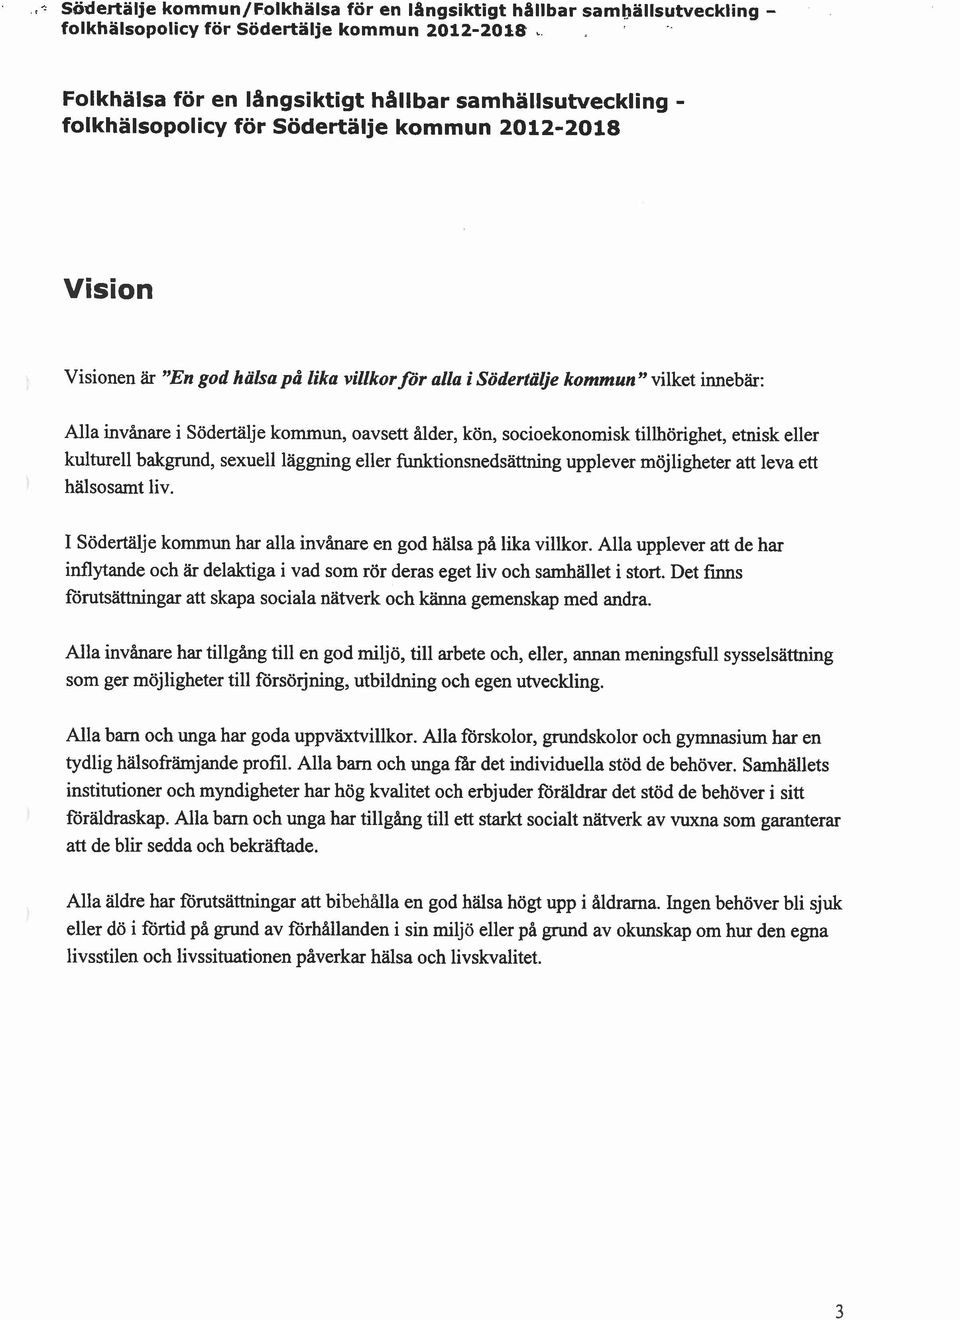 t+ Södertälje Vision Visionen är "En god halsa på lika villkor for alla i Södertälje kommun" vilket innebär: Alla invånare i Södertälje kommun, oavsett ålder, kön, socioekonomisk tillhörighet, etnisk